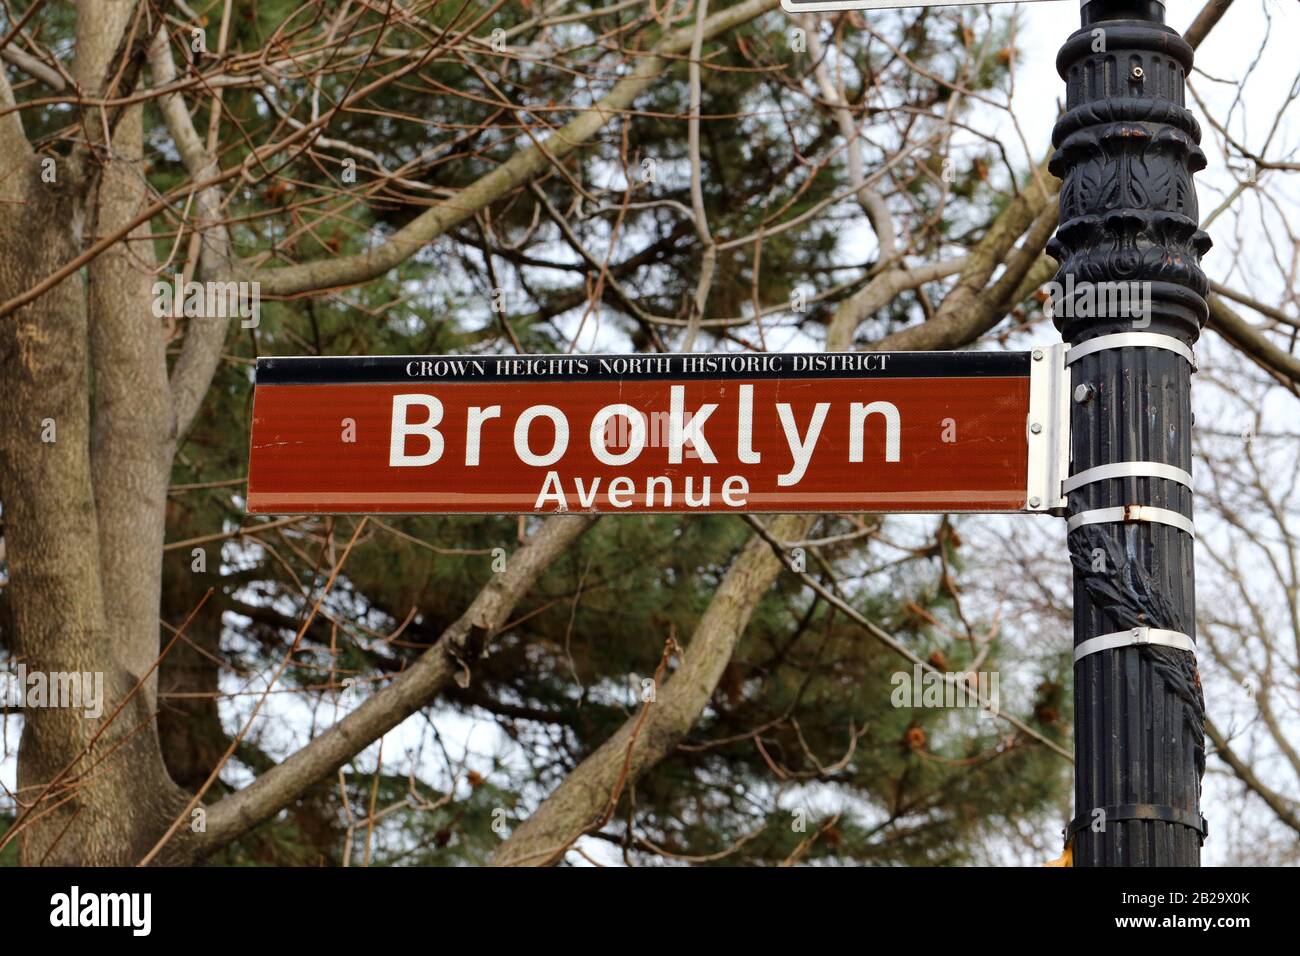 Un panneau de rue de l'avenue Brooklyn se trouve dans le quartier historique de Crown Heights North à Brooklyn, NY. Banque D'Images